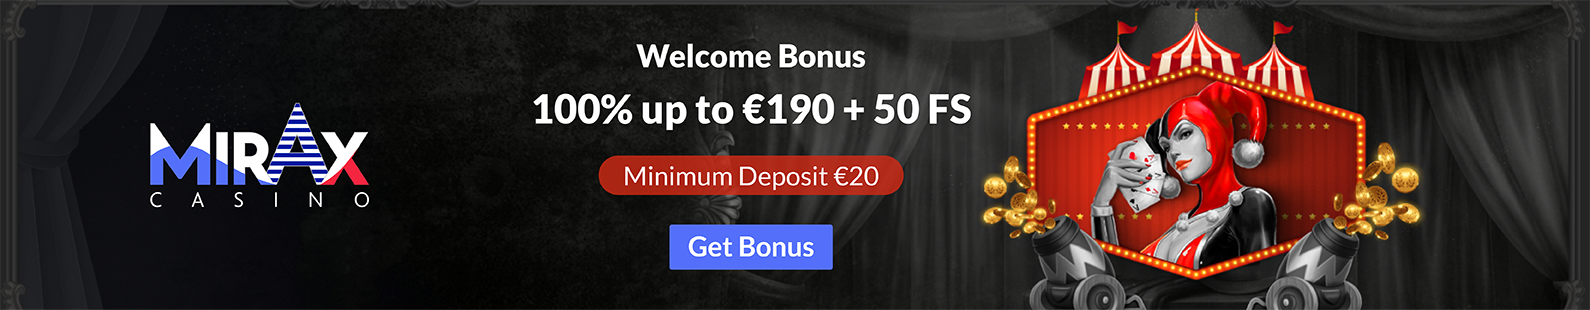 Mirax Casino Welcome Bonus of €190 - Big